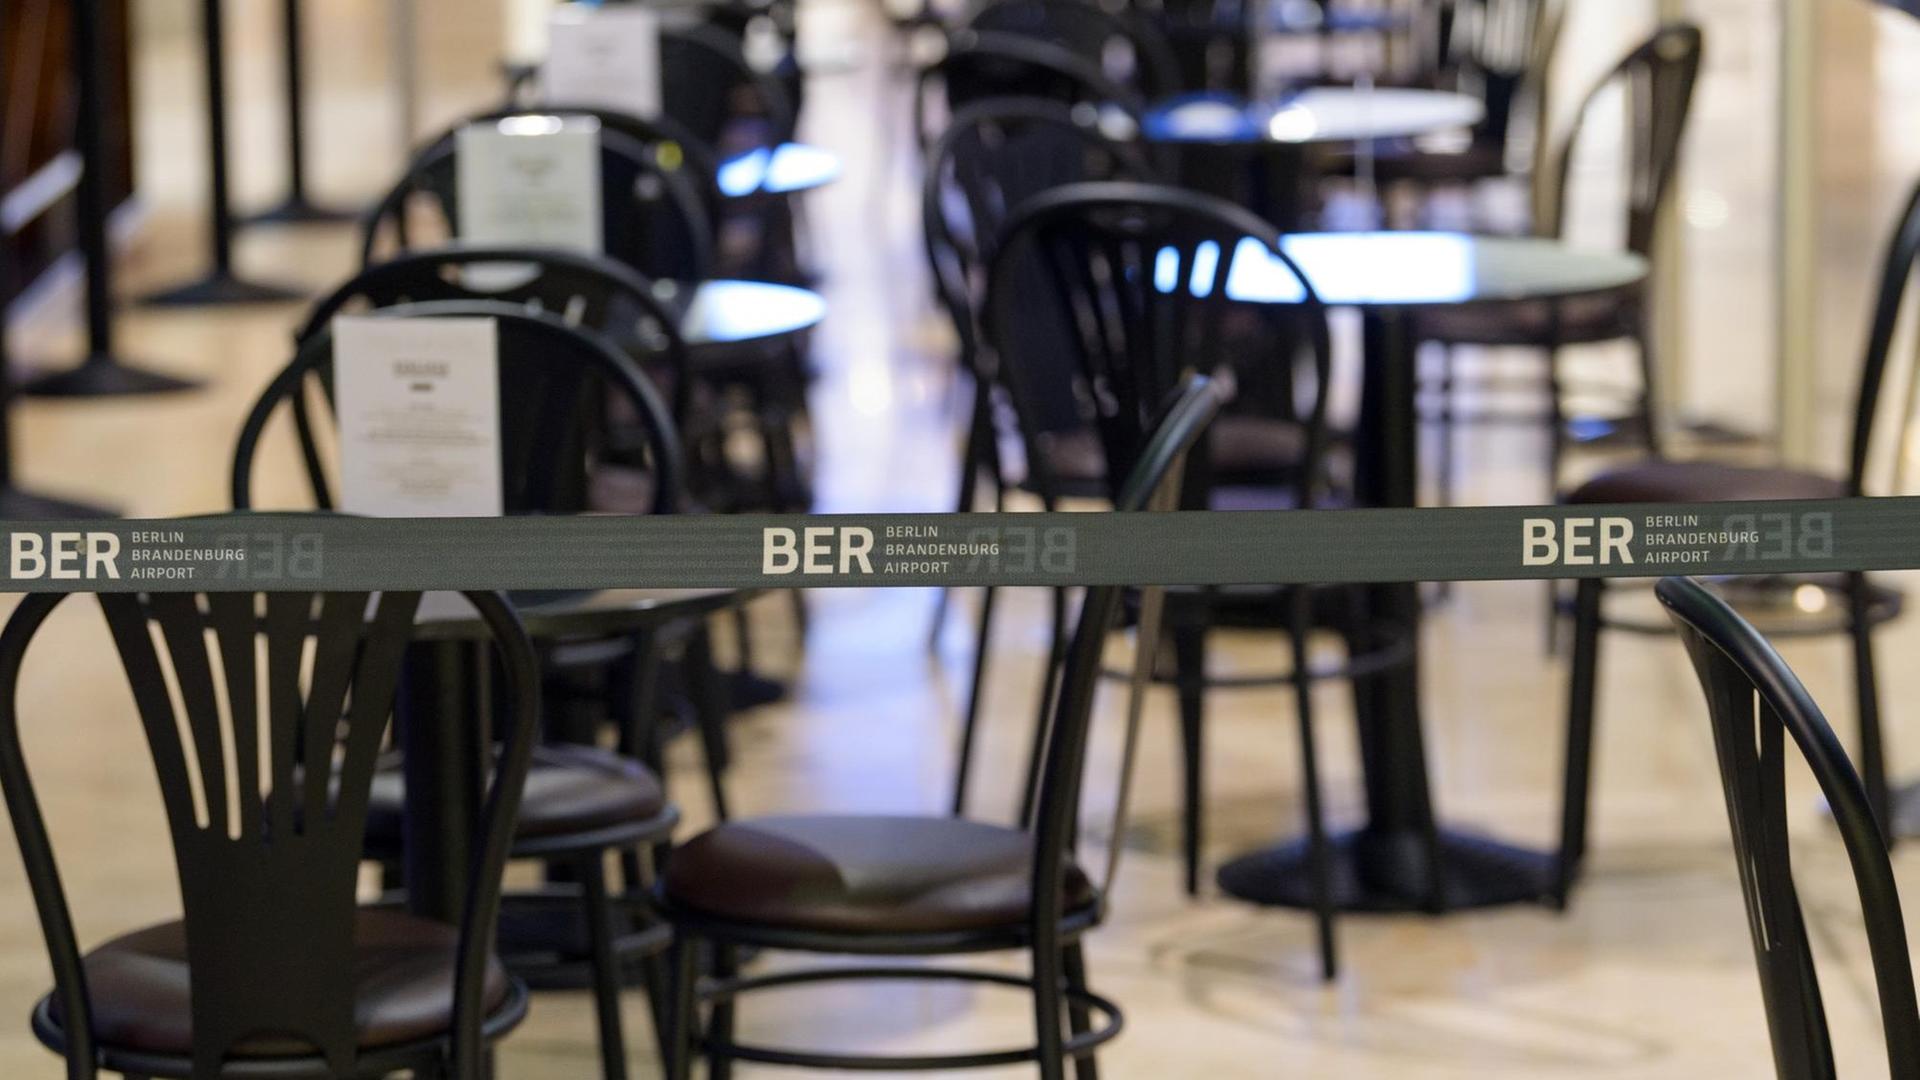 Ein wegen der Corona-Regeln aufgebautes Absperrband mit dem Logo BER verhindert, dass sich Reisende an die Tische eines Cafes im Duty-Free-Bereich des Terminal 1 setzen können.